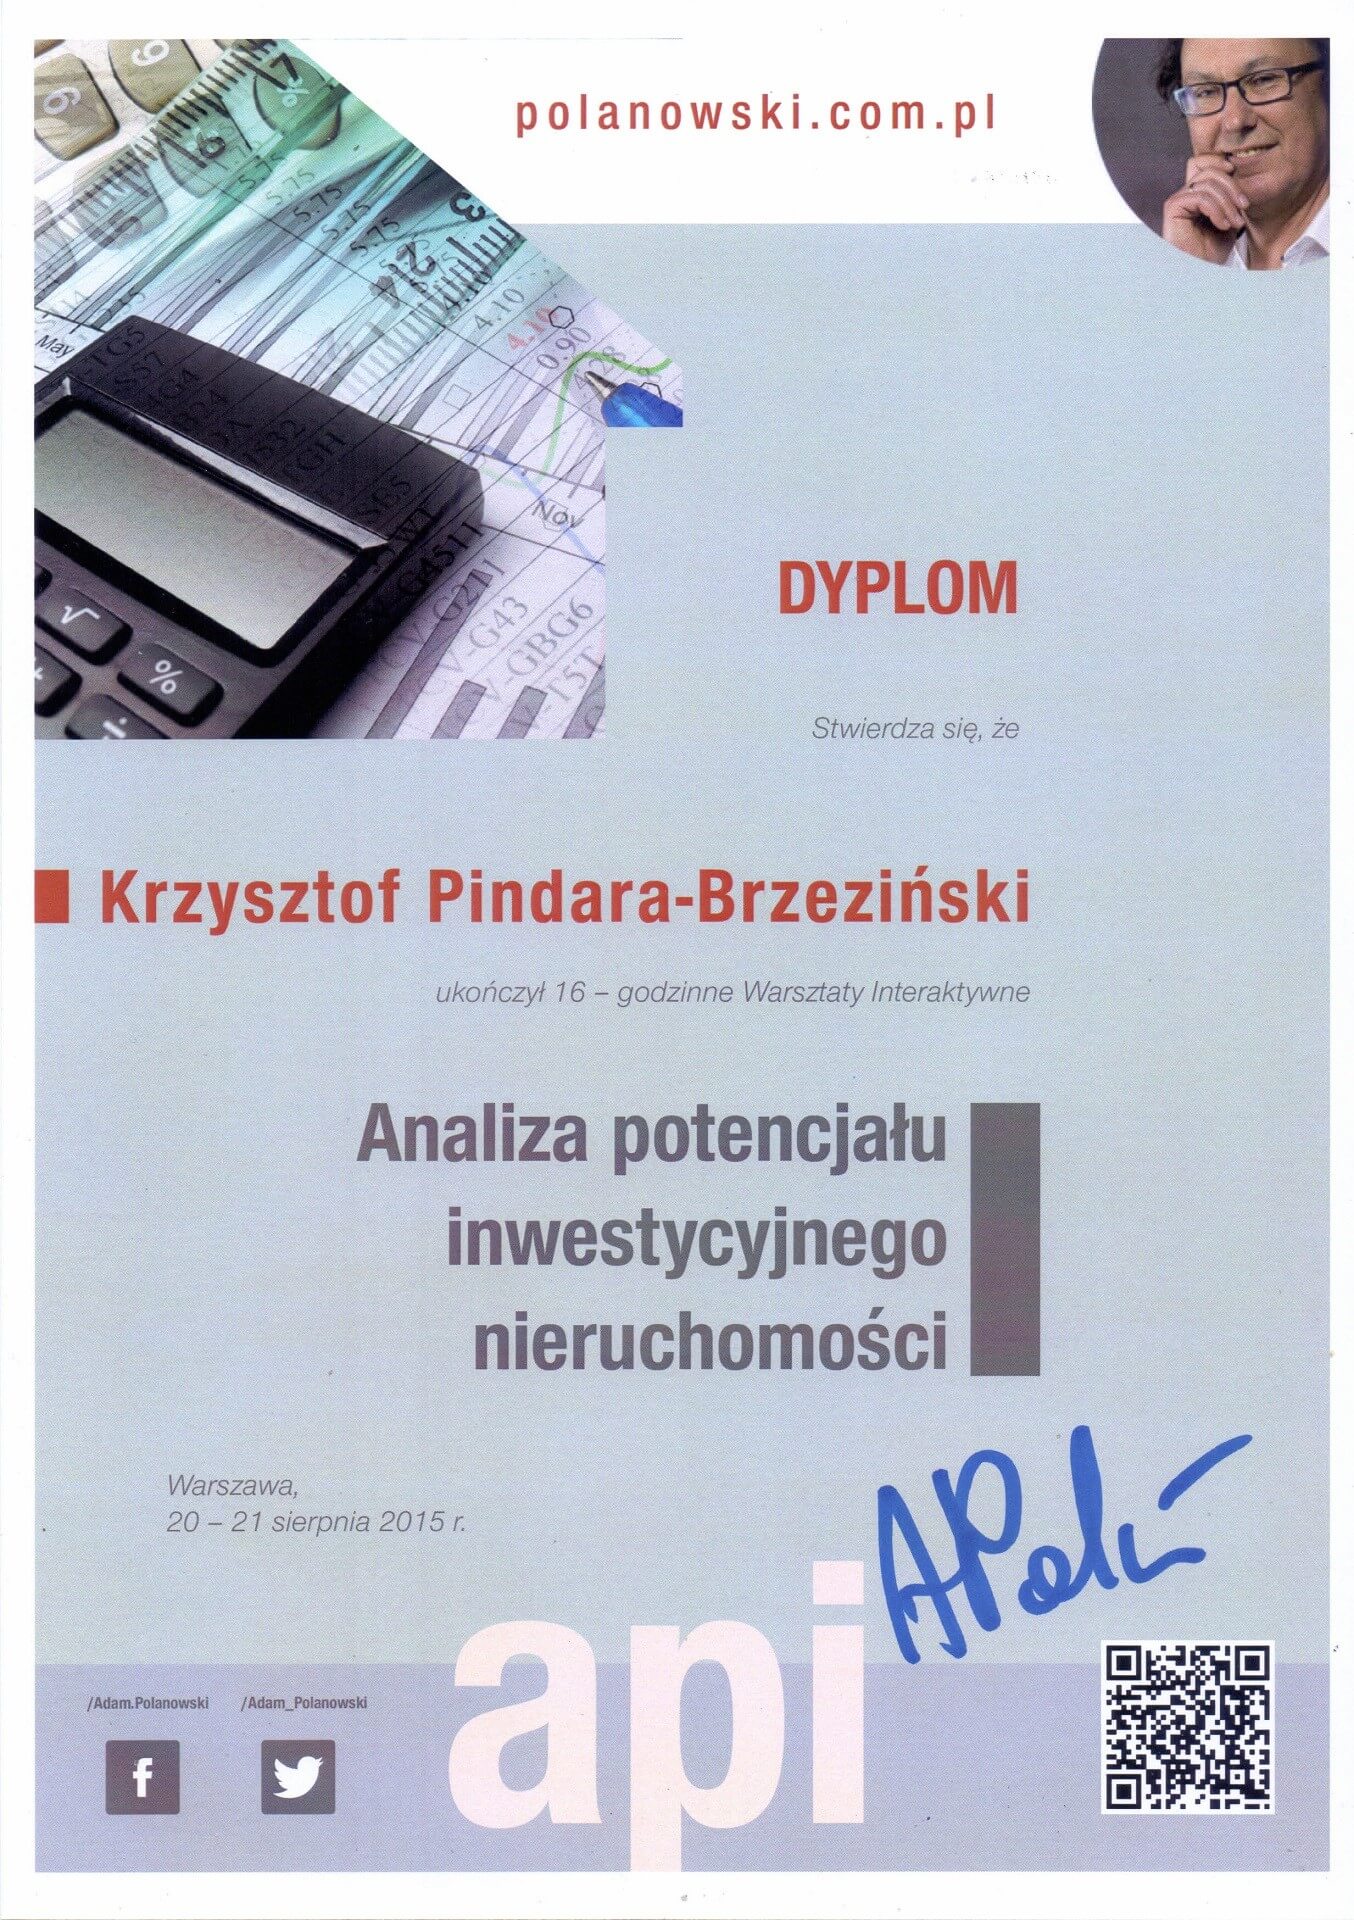 Certyfikat_Krzysztof Pindara Brzeziński (28)